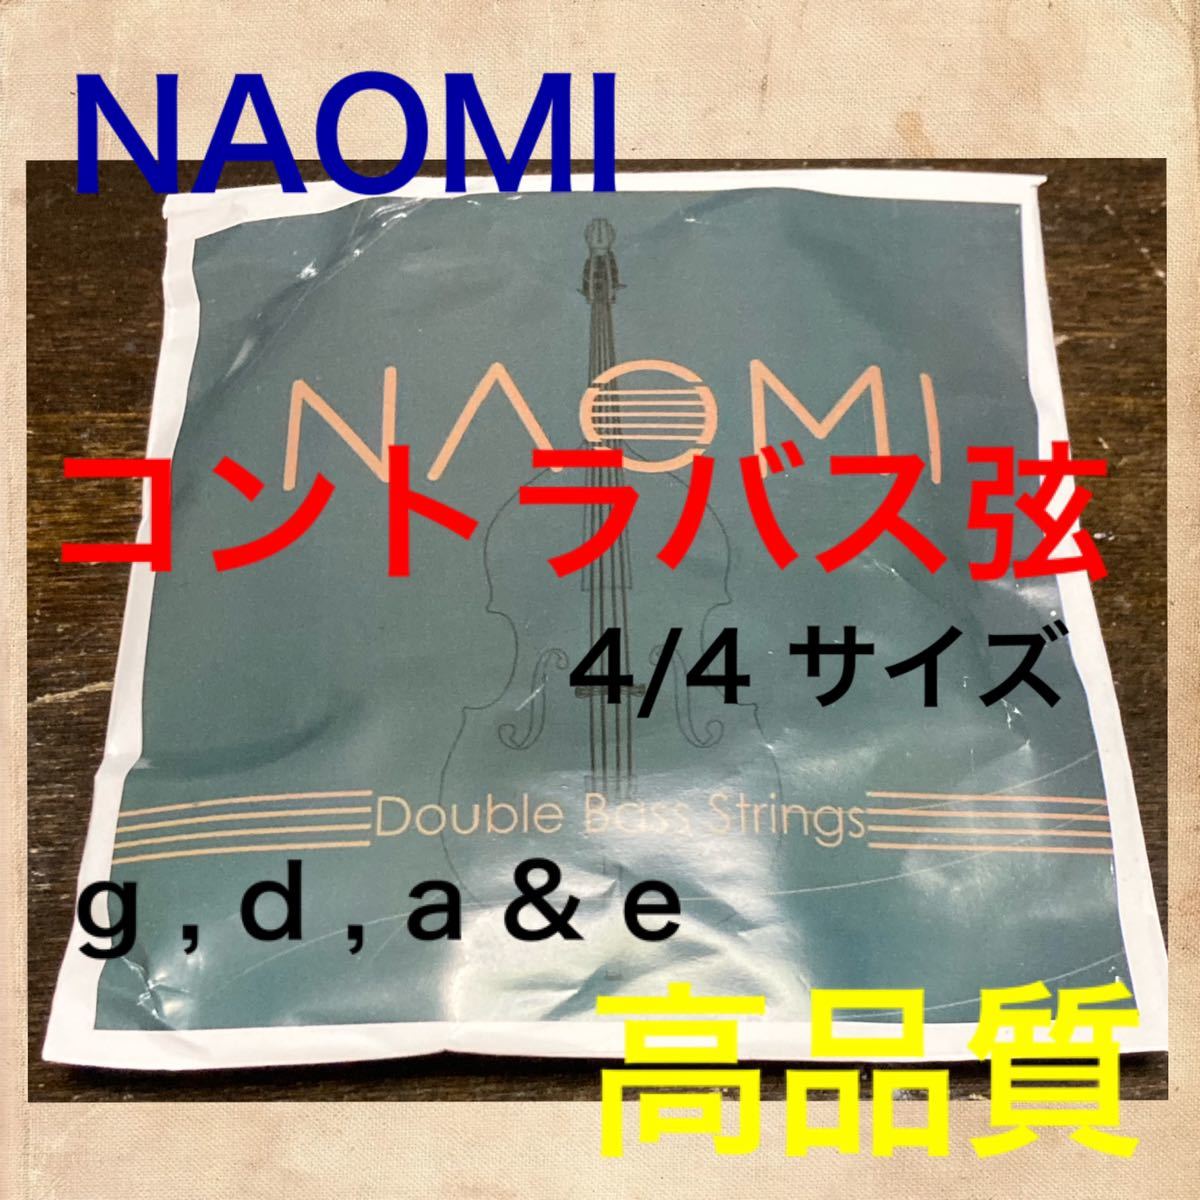 誕生日プレゼント NAOMI コントラバス弦 セット 4 3 g d a e aob.adv.br